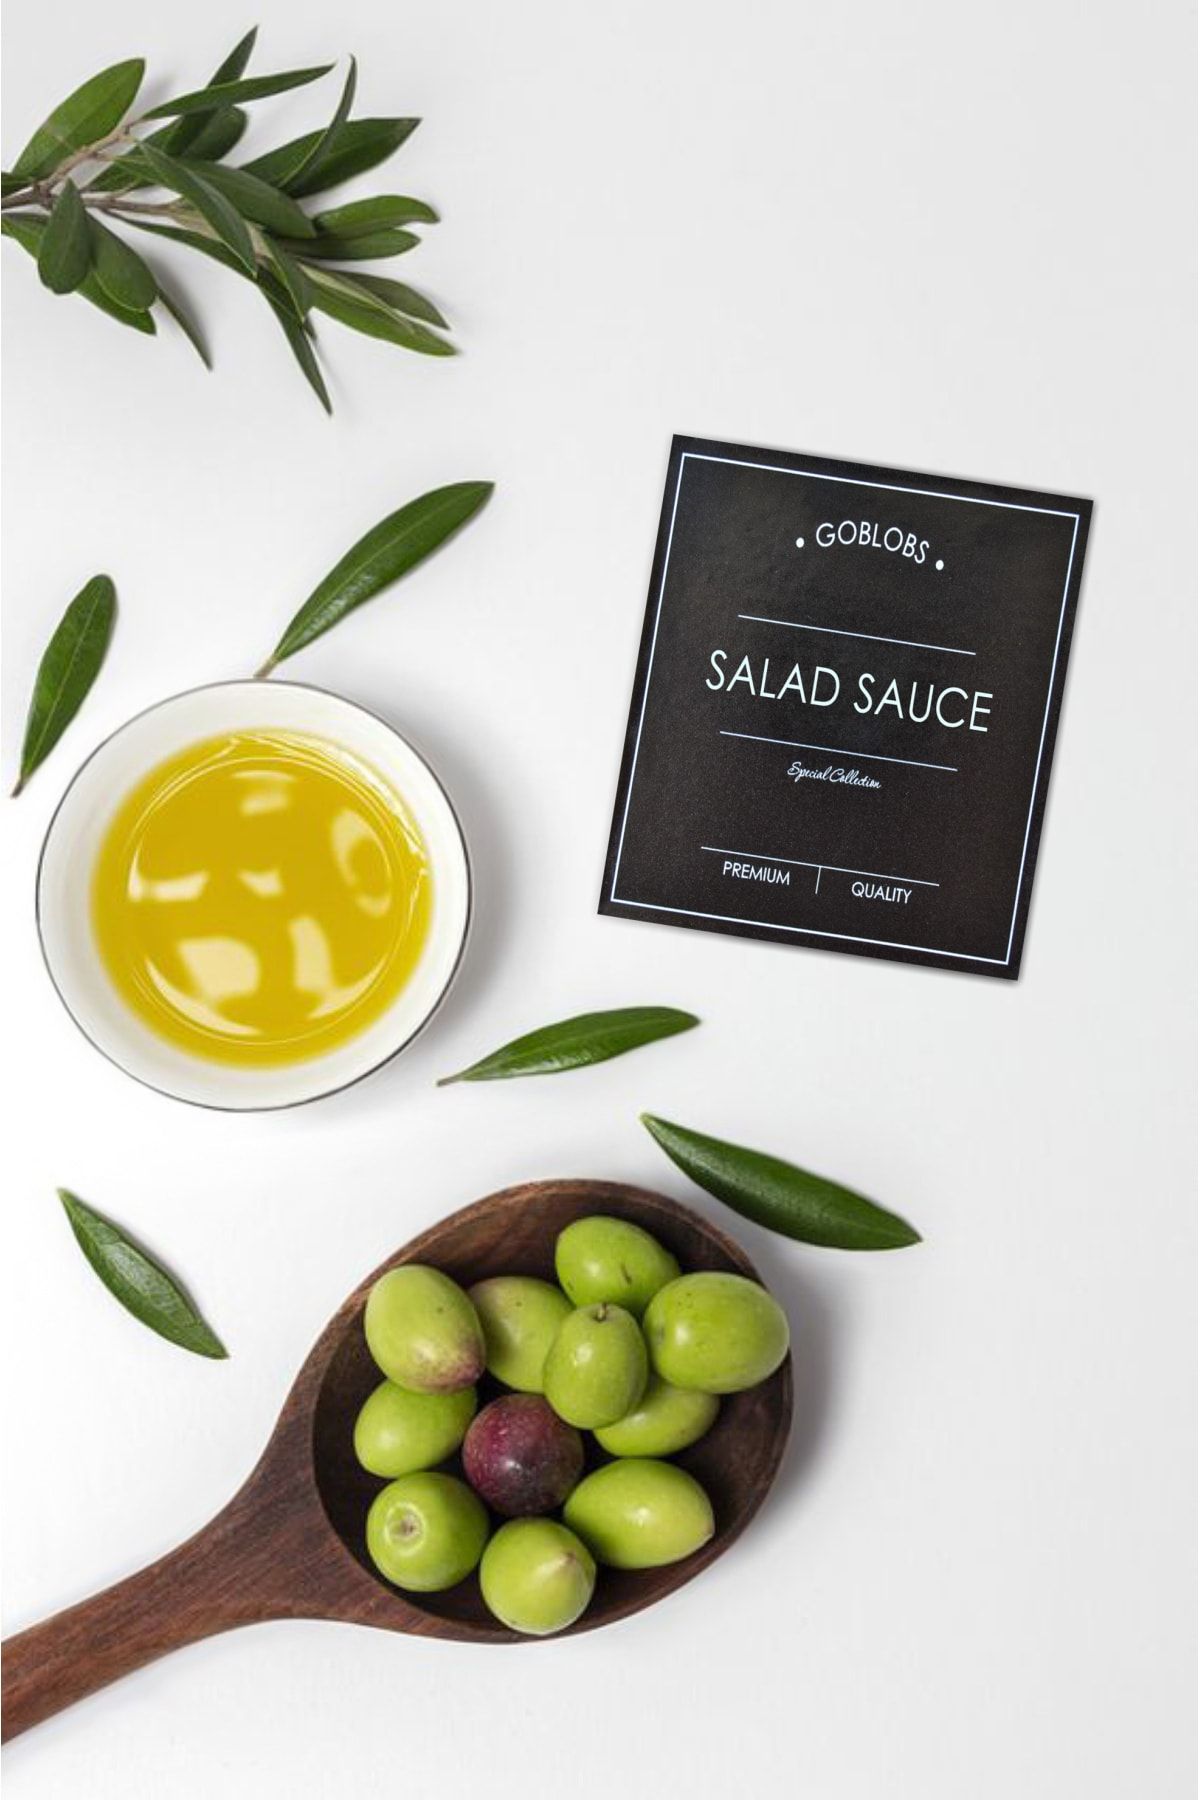 GO BLOBS Sticker Etiket Siyah Salad Sauce Suya Dayanıklı Şişe Etiketi